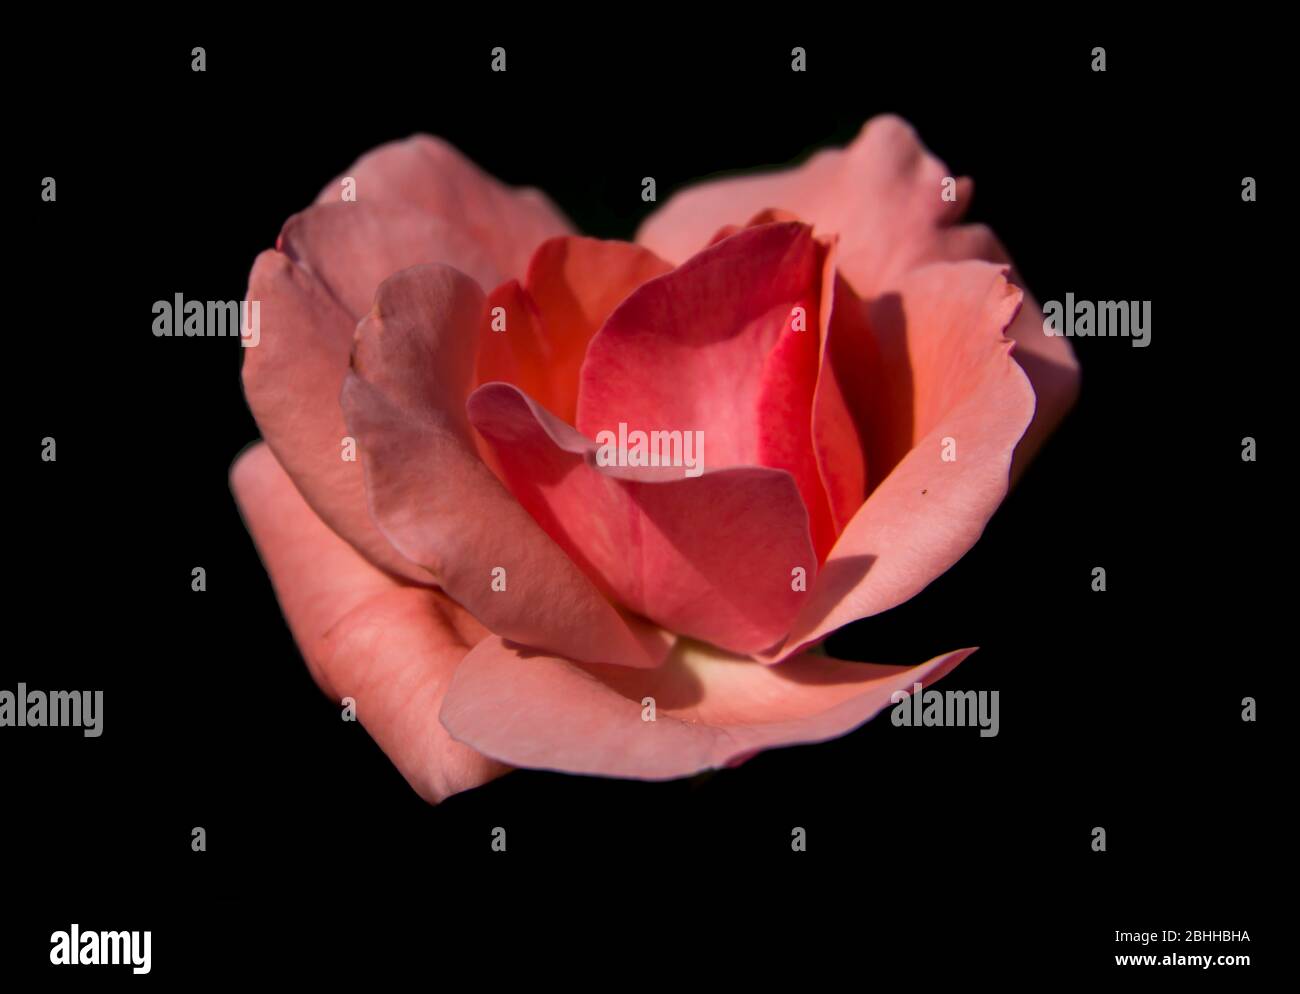 pink rose close up Stock Photo